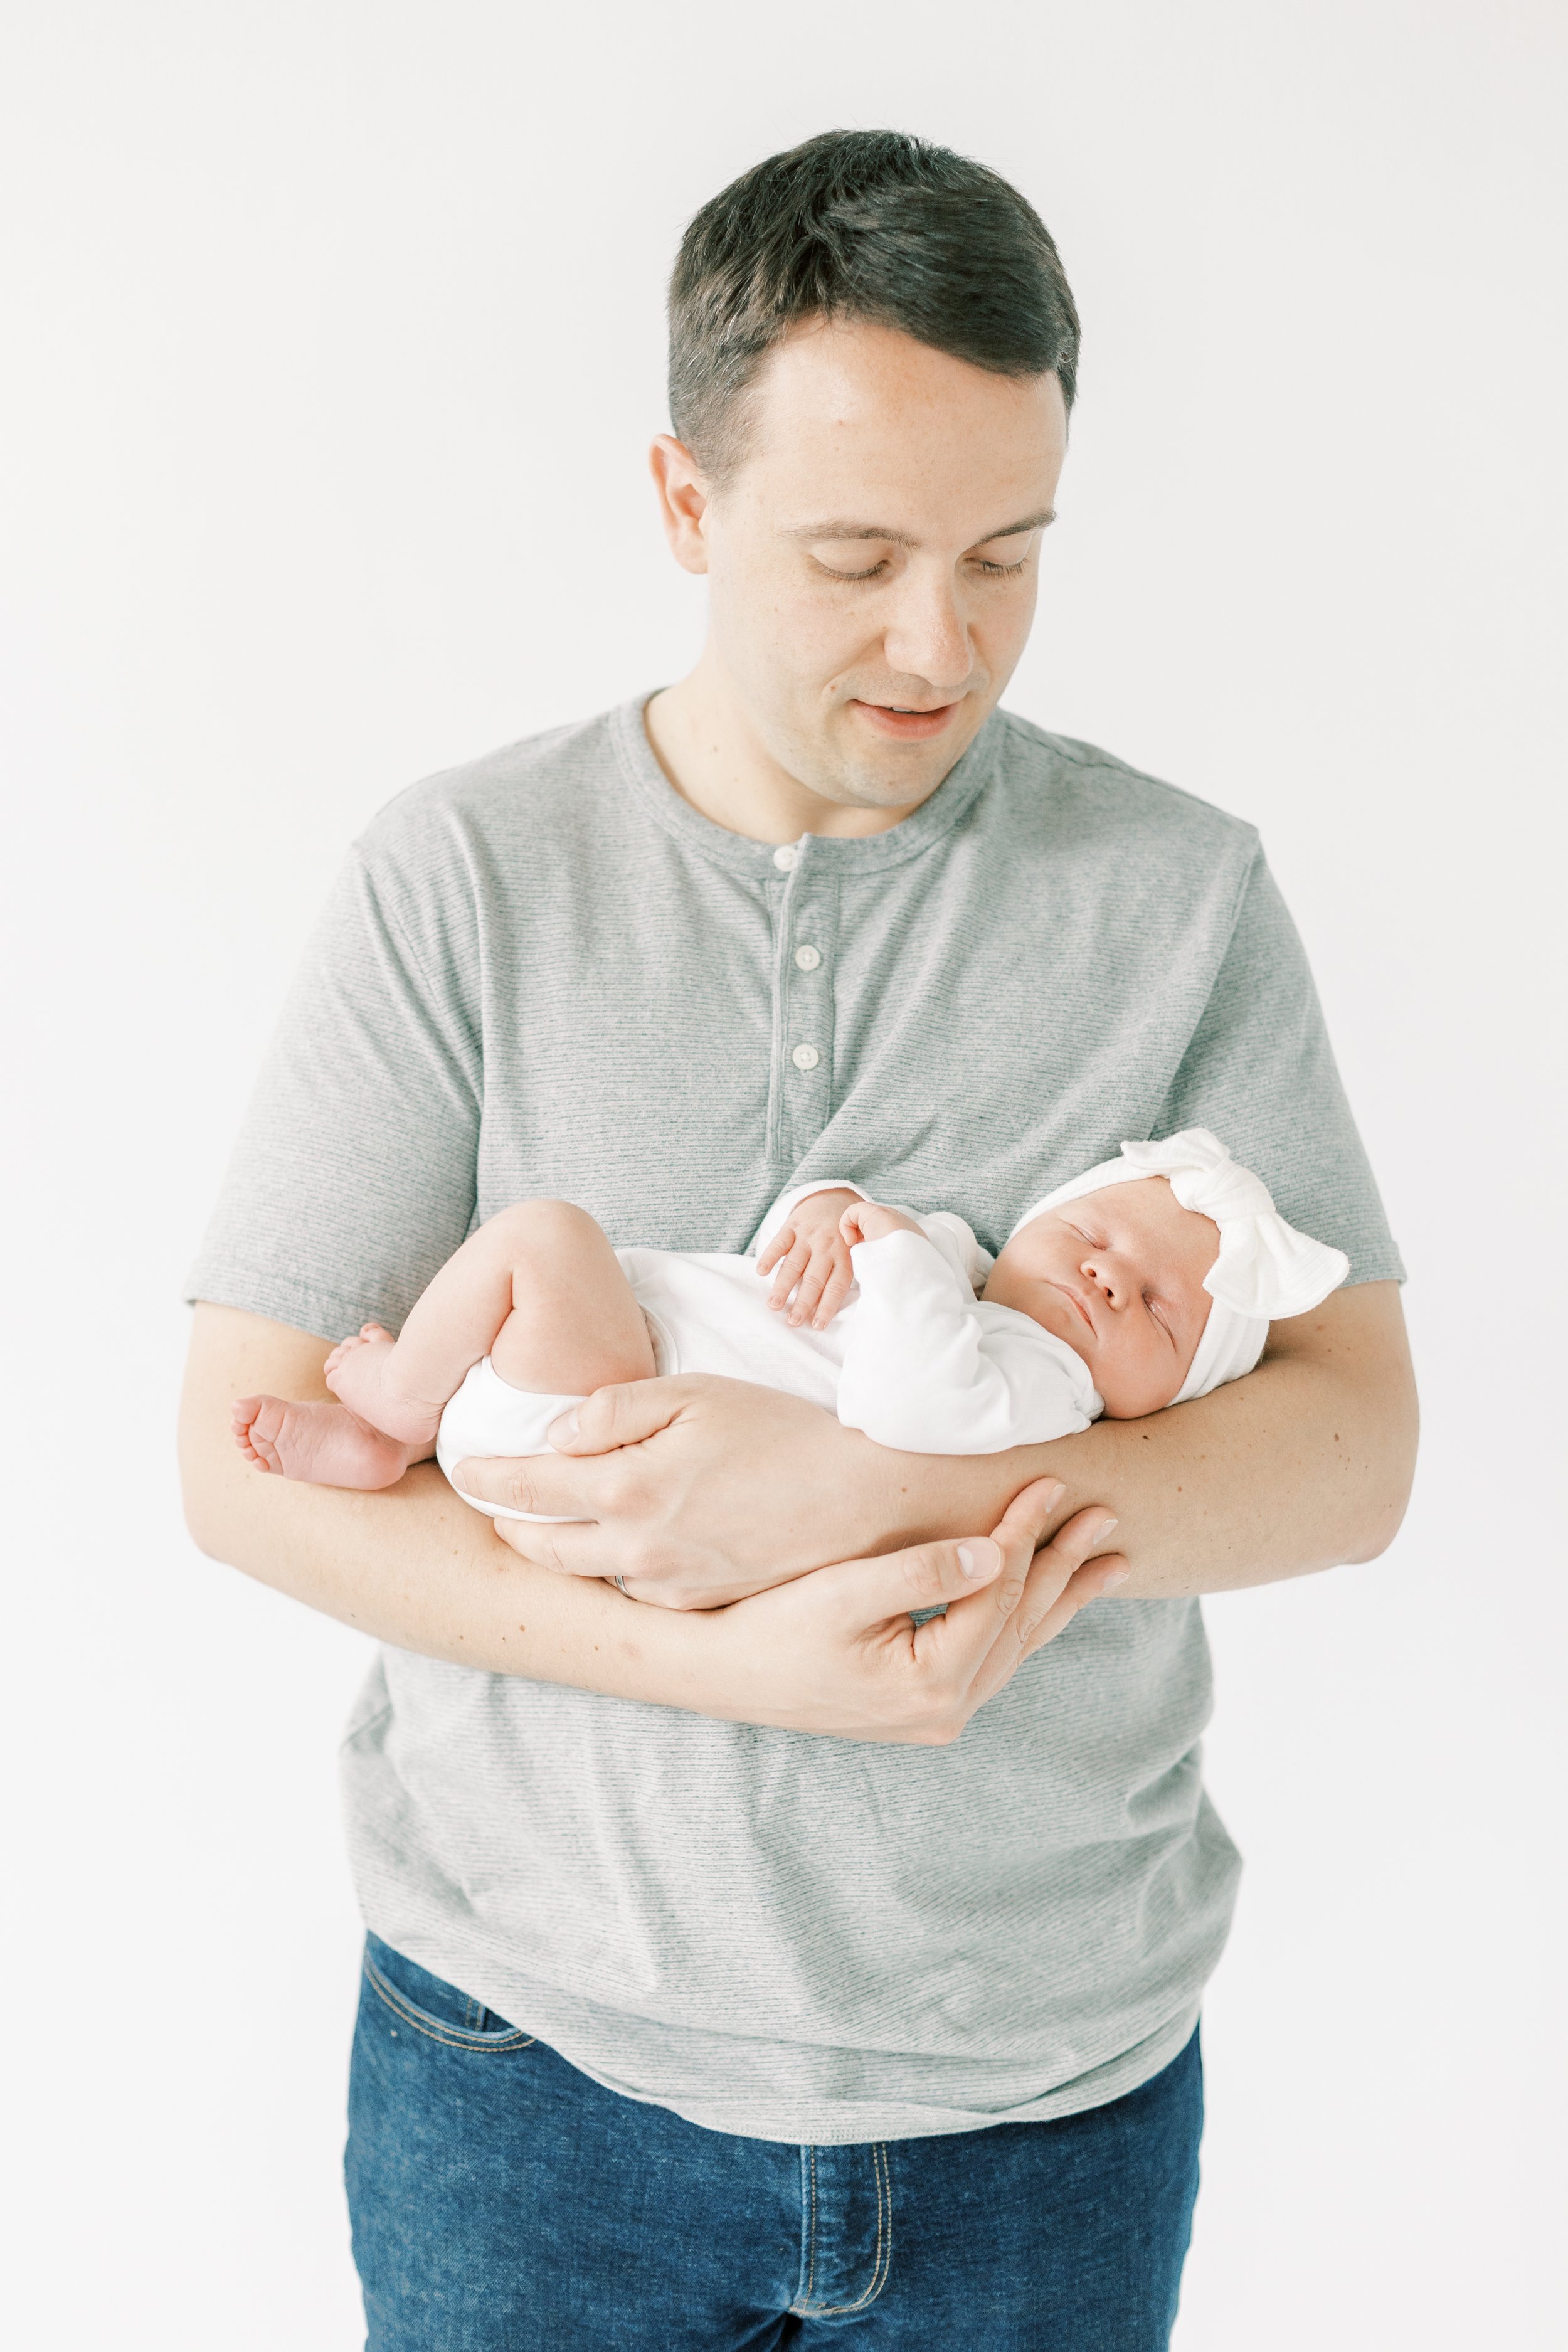 Baby Georgia - Vanessa Wyler Waukesha Newborn Photography Studio